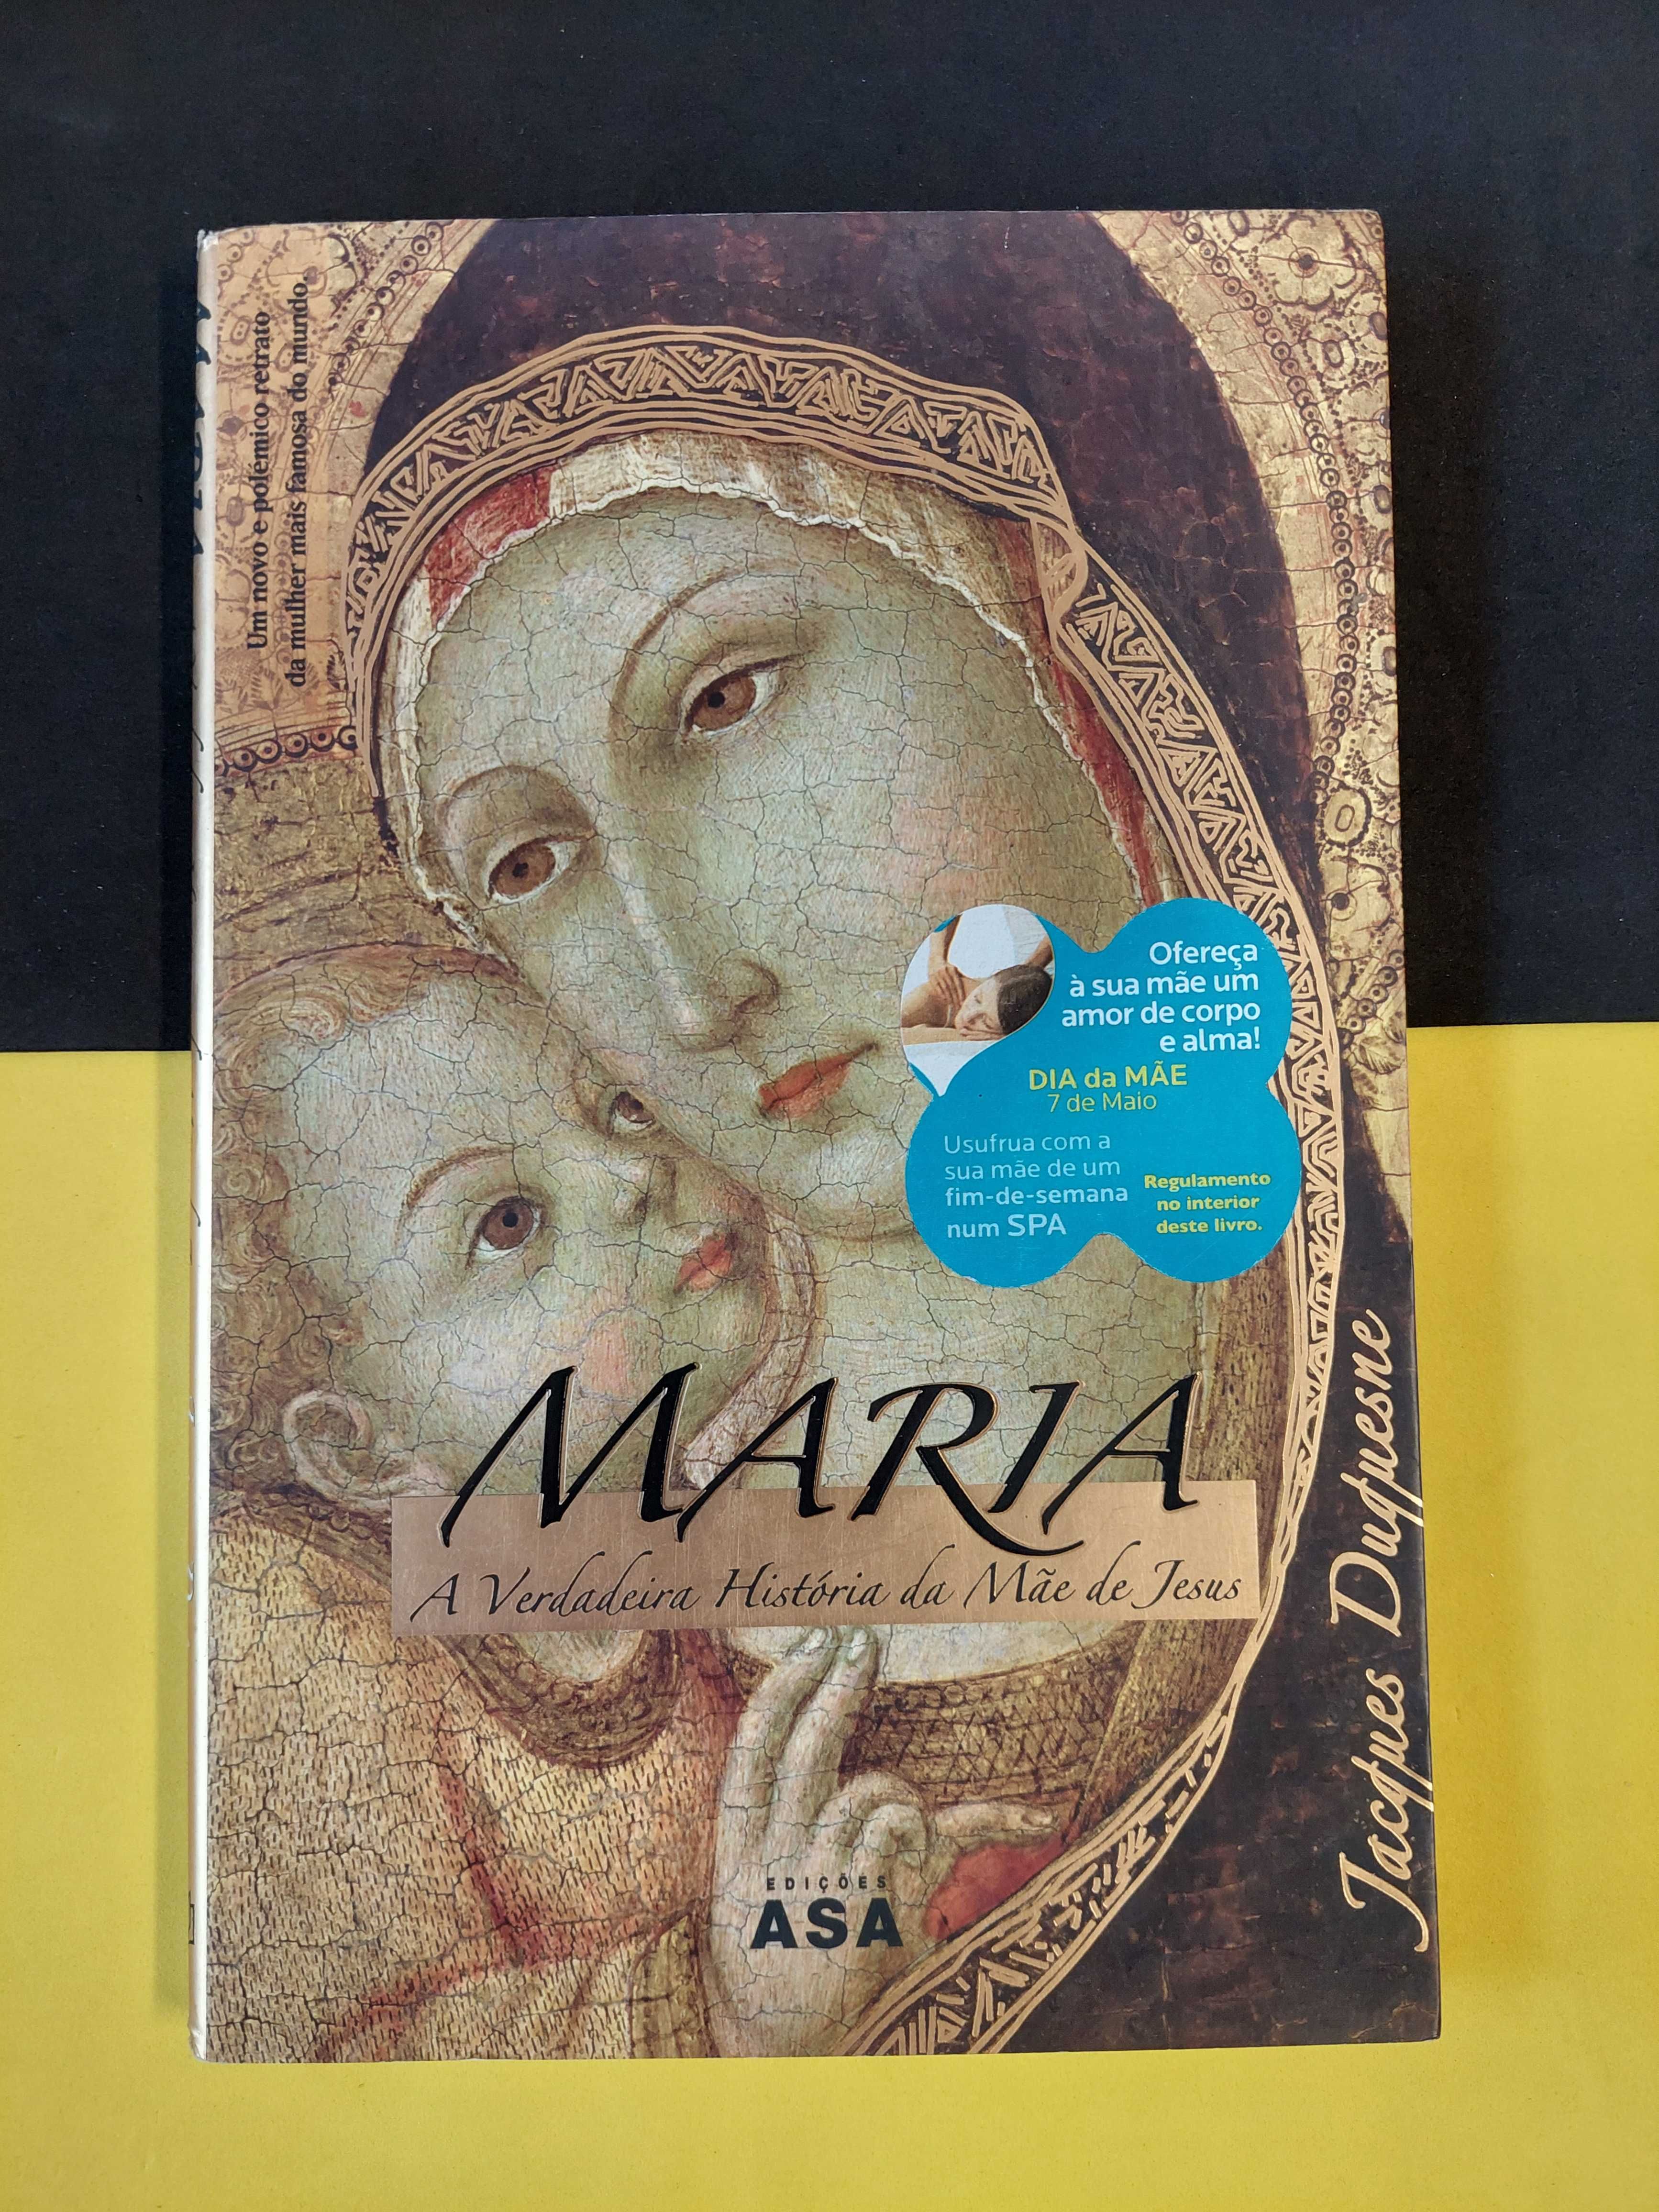 Jacques Duquesne - Maria, A verdadeira história da mãe de jesus